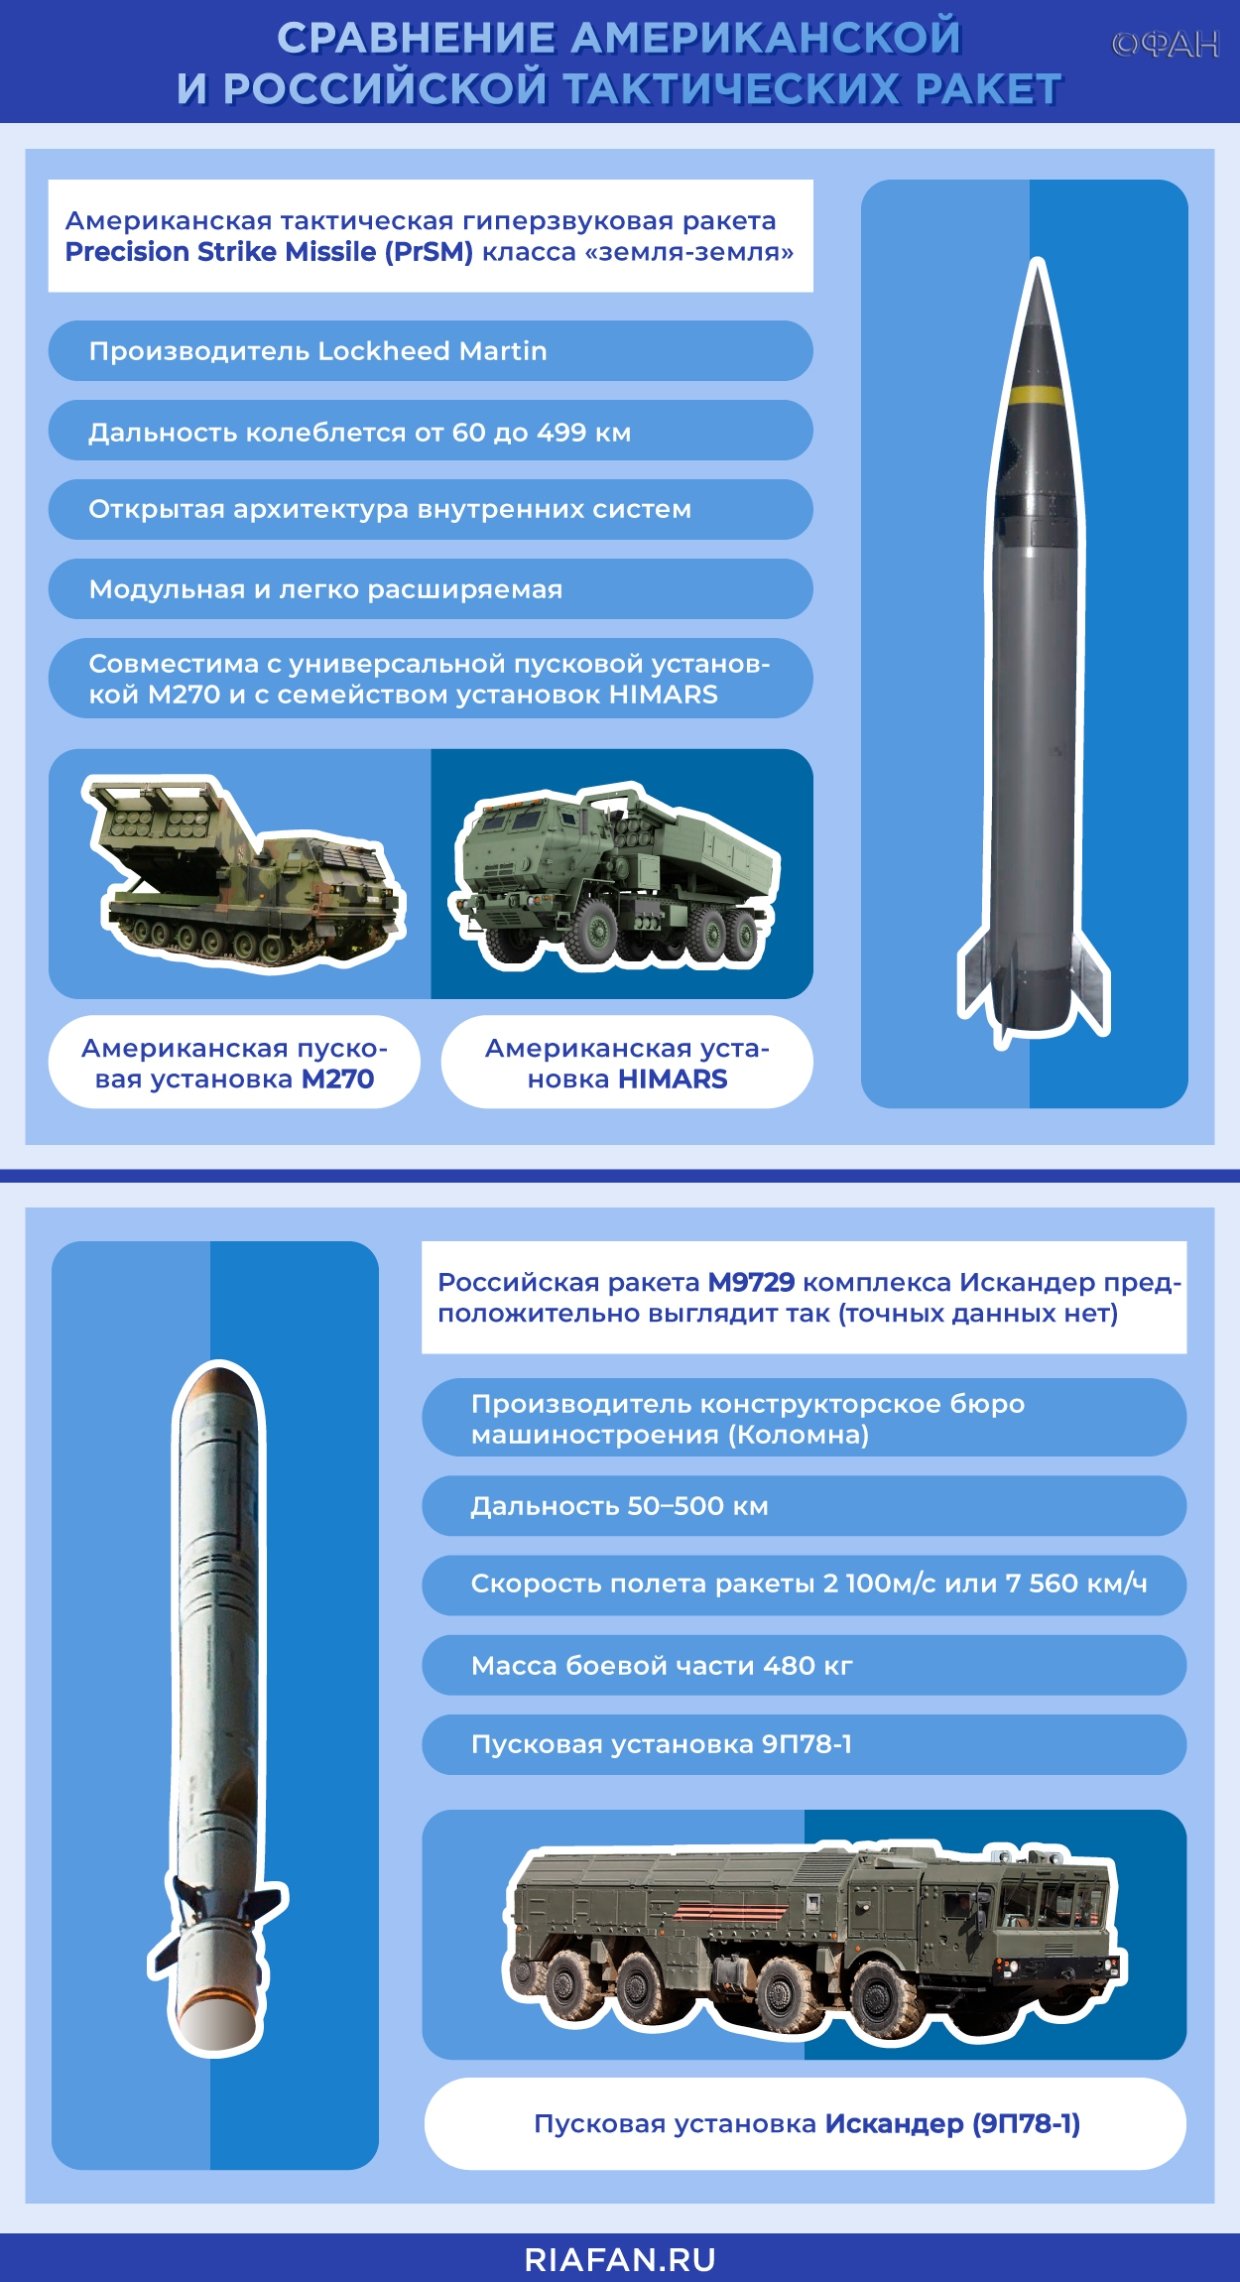 Atacms ракета характеристики дальность поражения. Ракеты atacms дальность. Atacms ракетный комплекс.